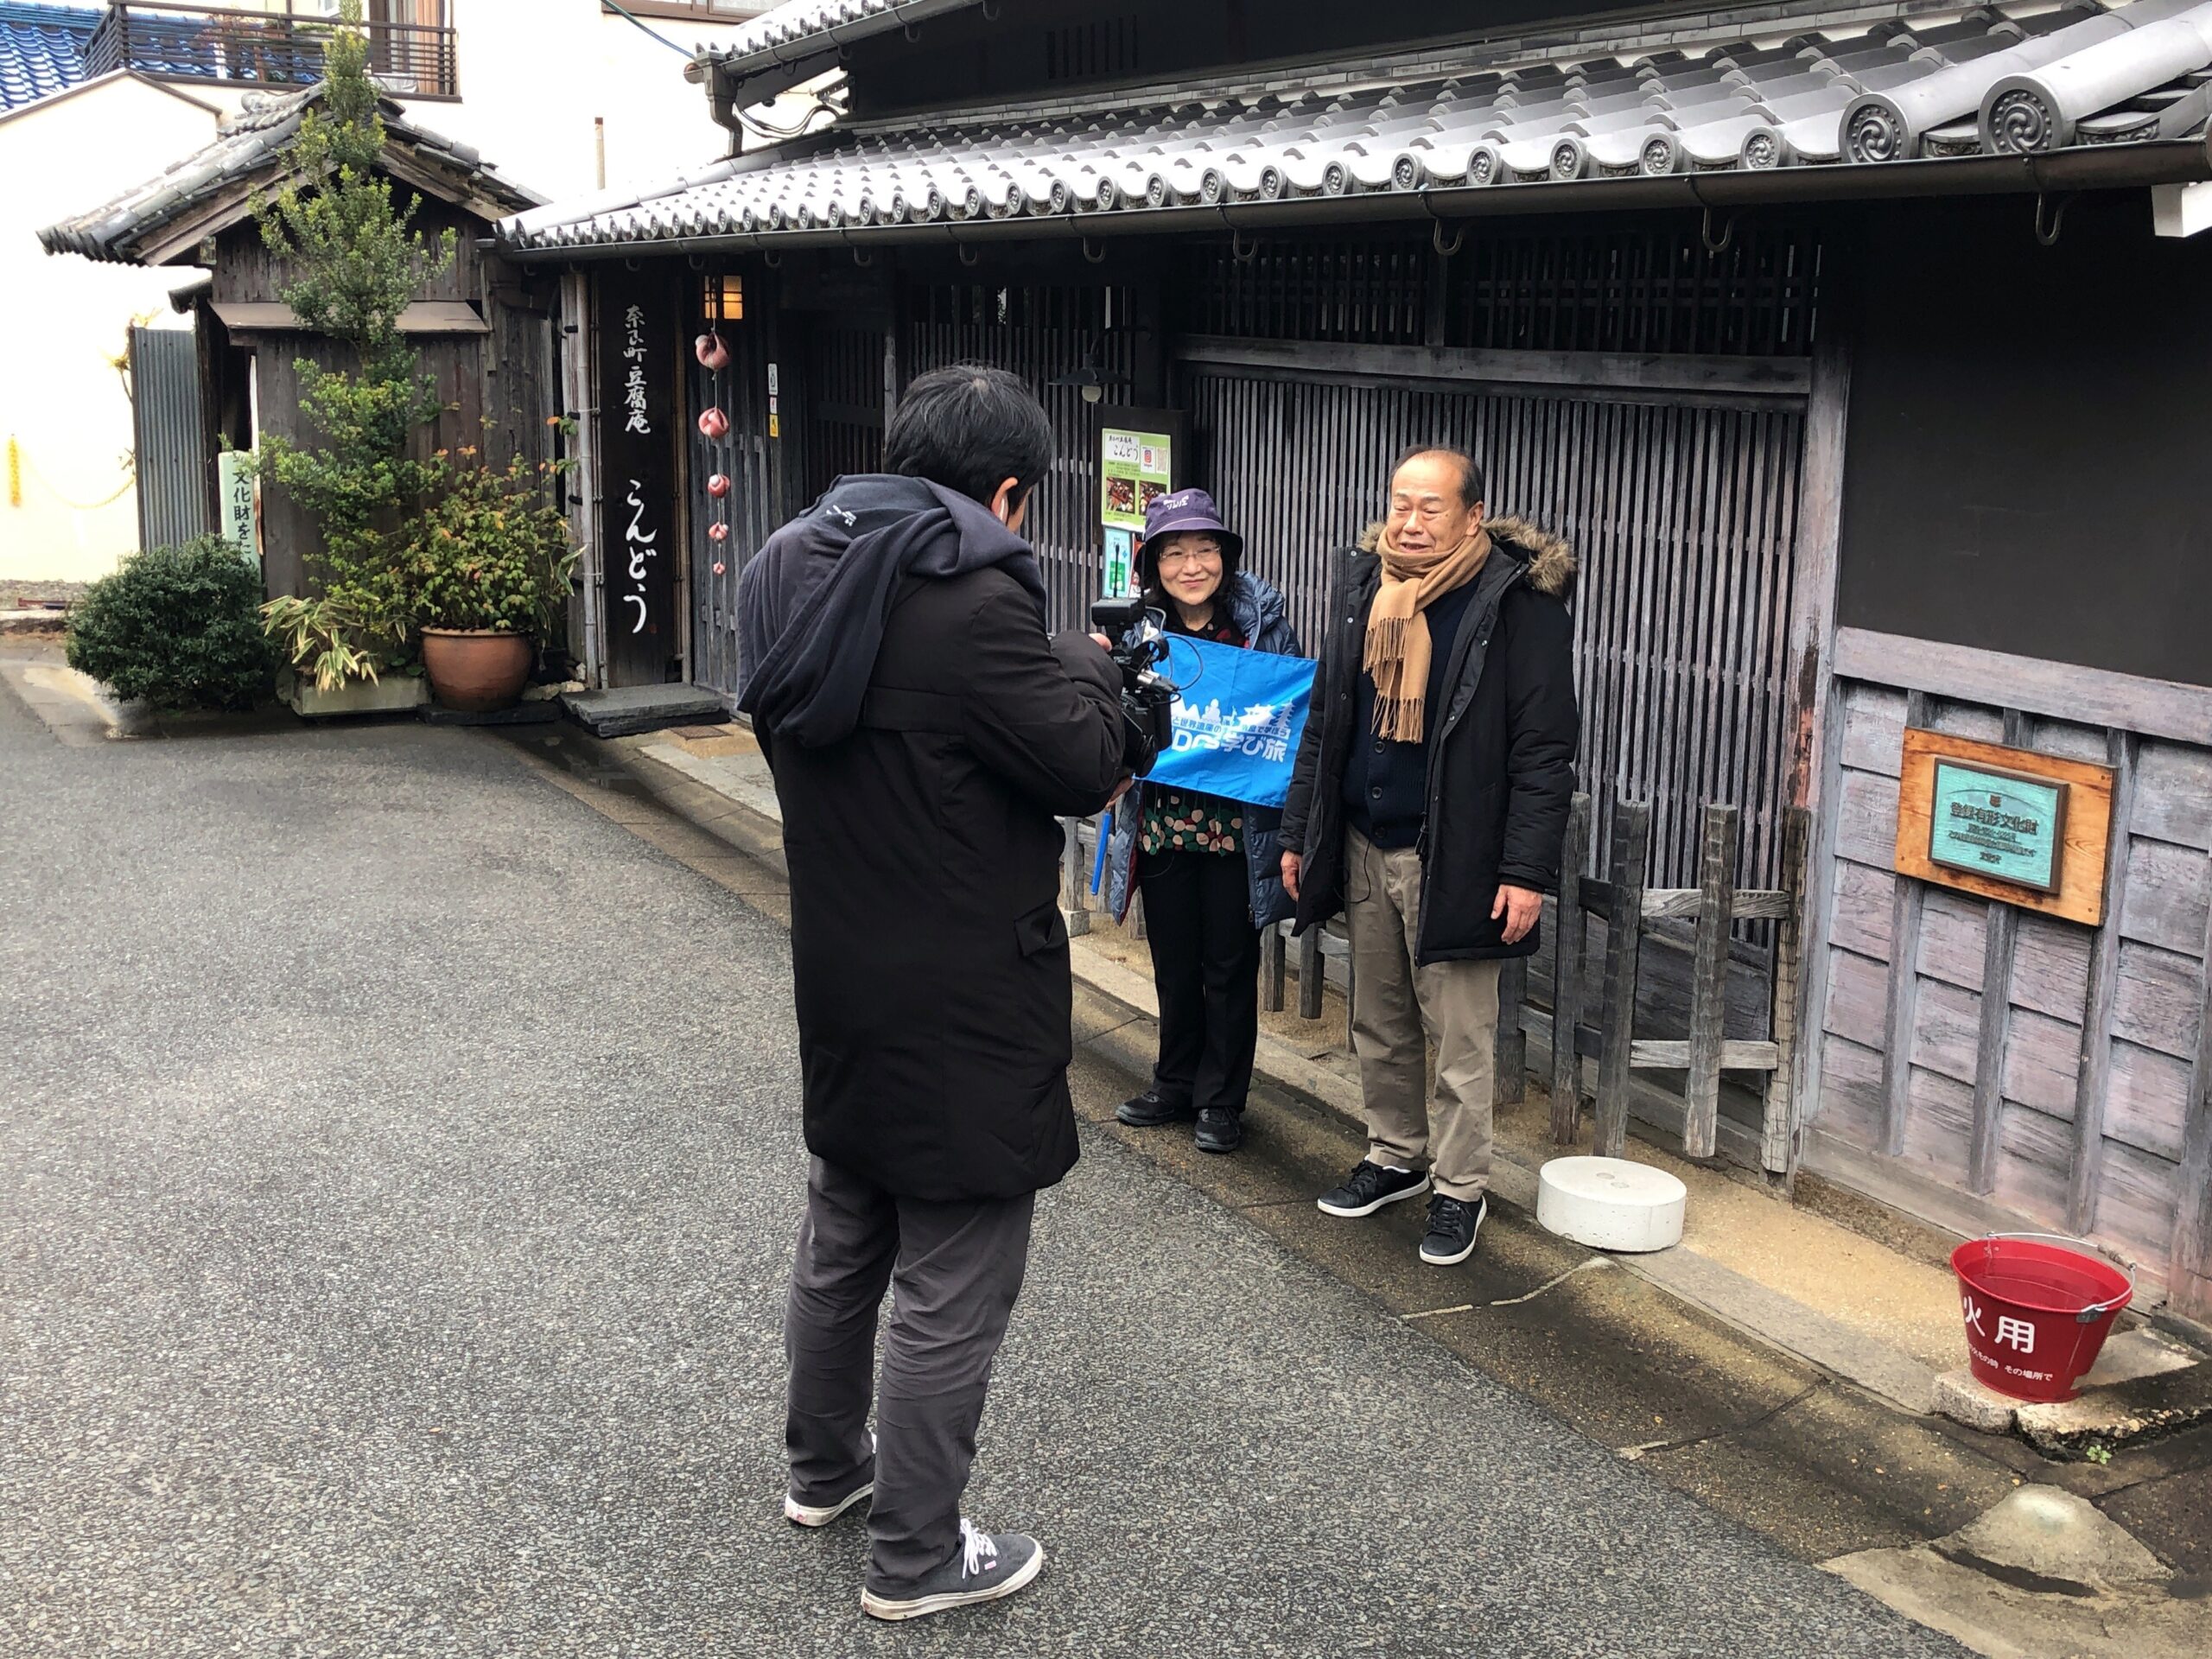 BS朝日『梅雀さんSDGsってなあに？』で奈良SDGs学び旅が紹介されました。